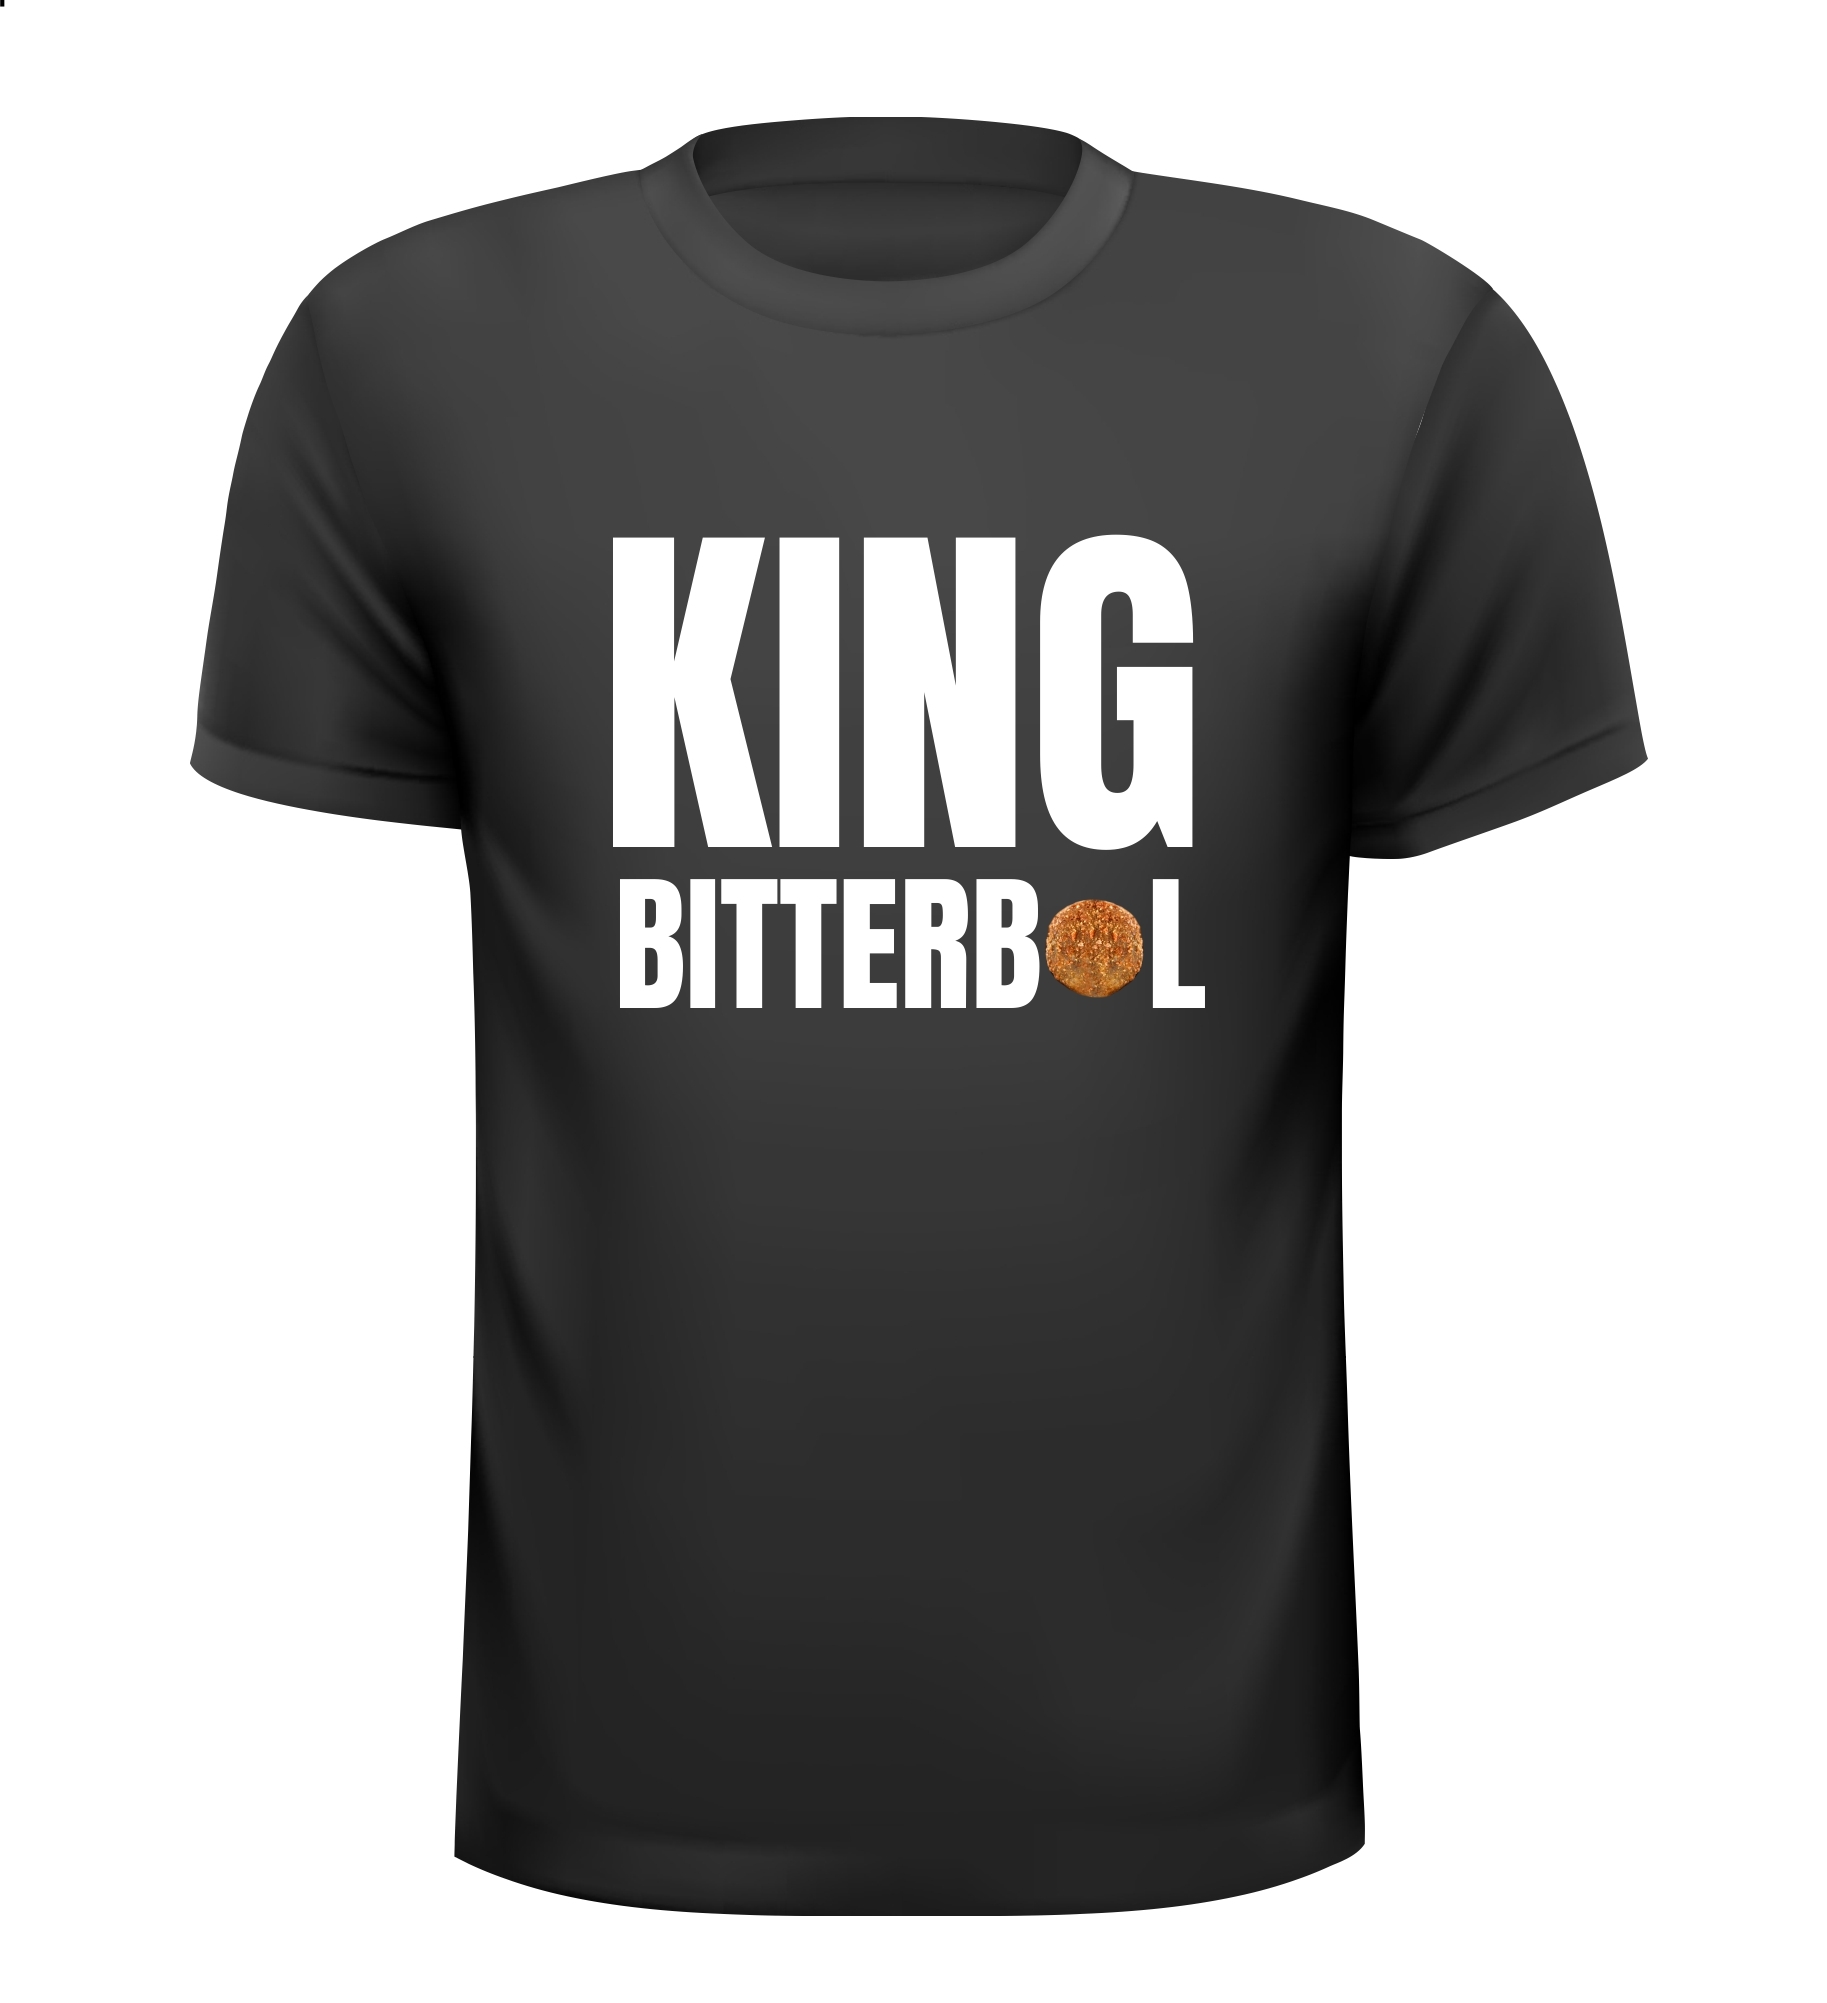 Shirtje voor King bitterbal